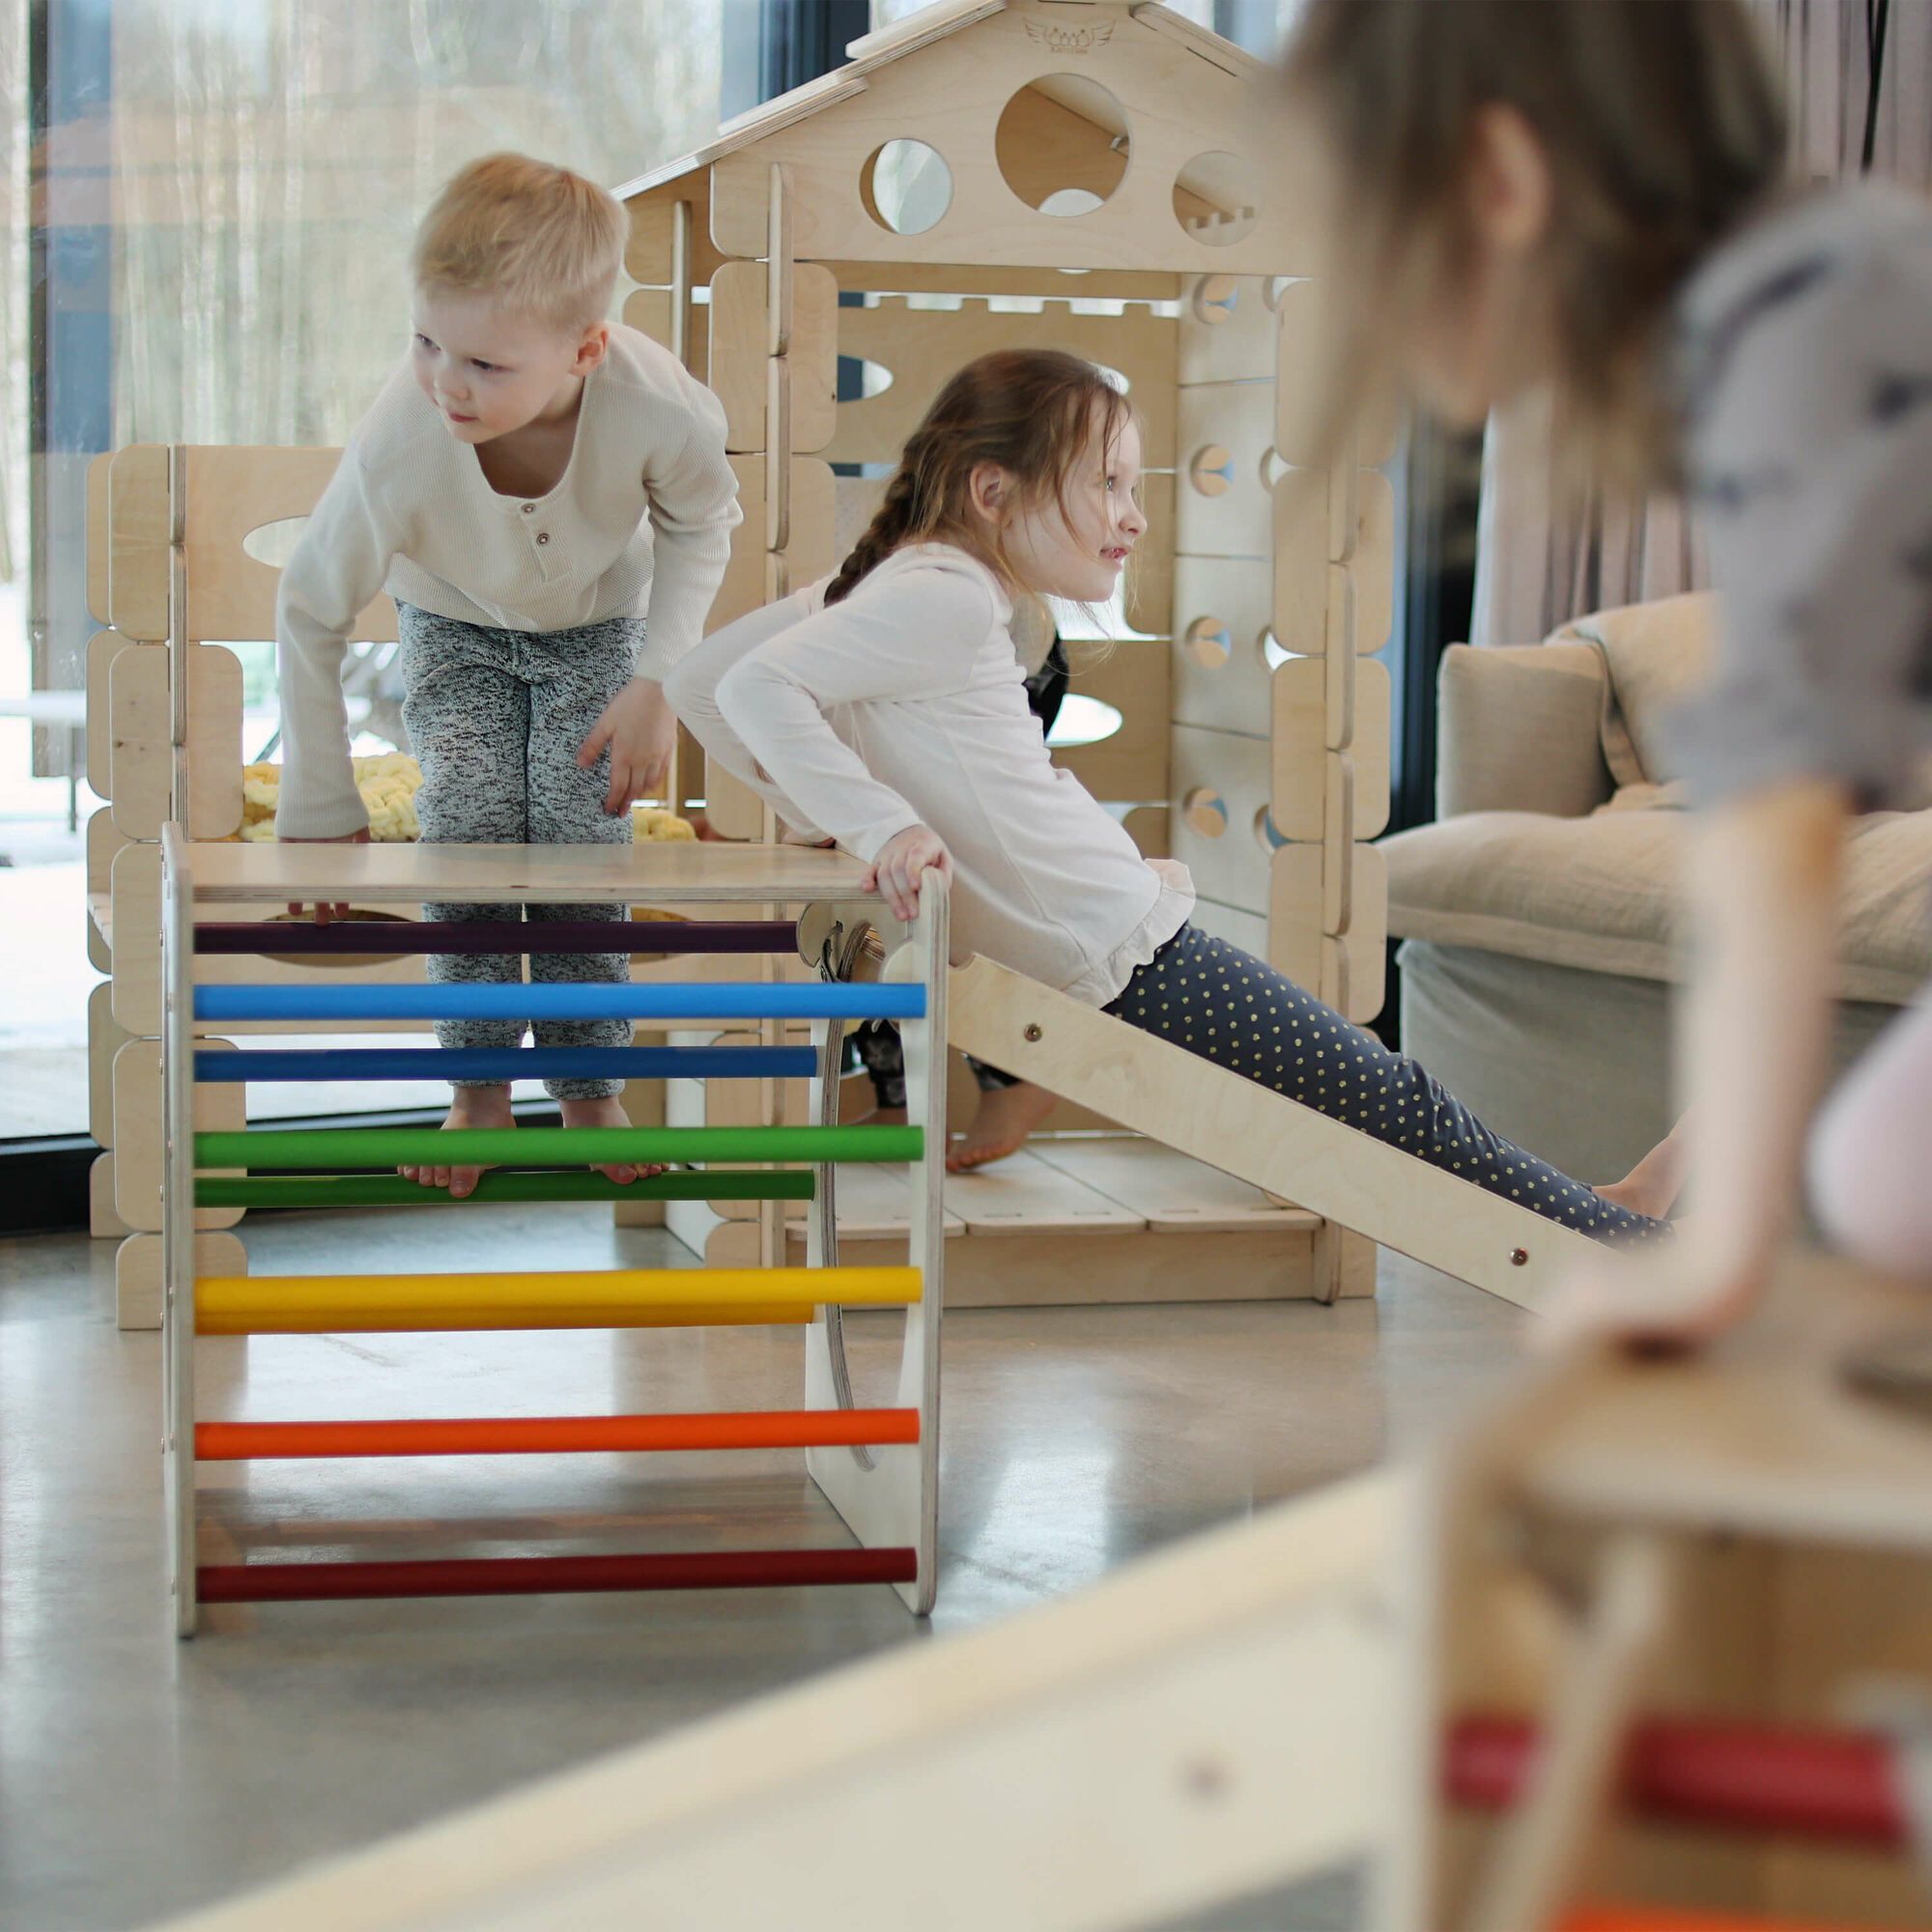 KateHaa Houten Activiteiten Kubus met Ladder en Klimwand Regenboog